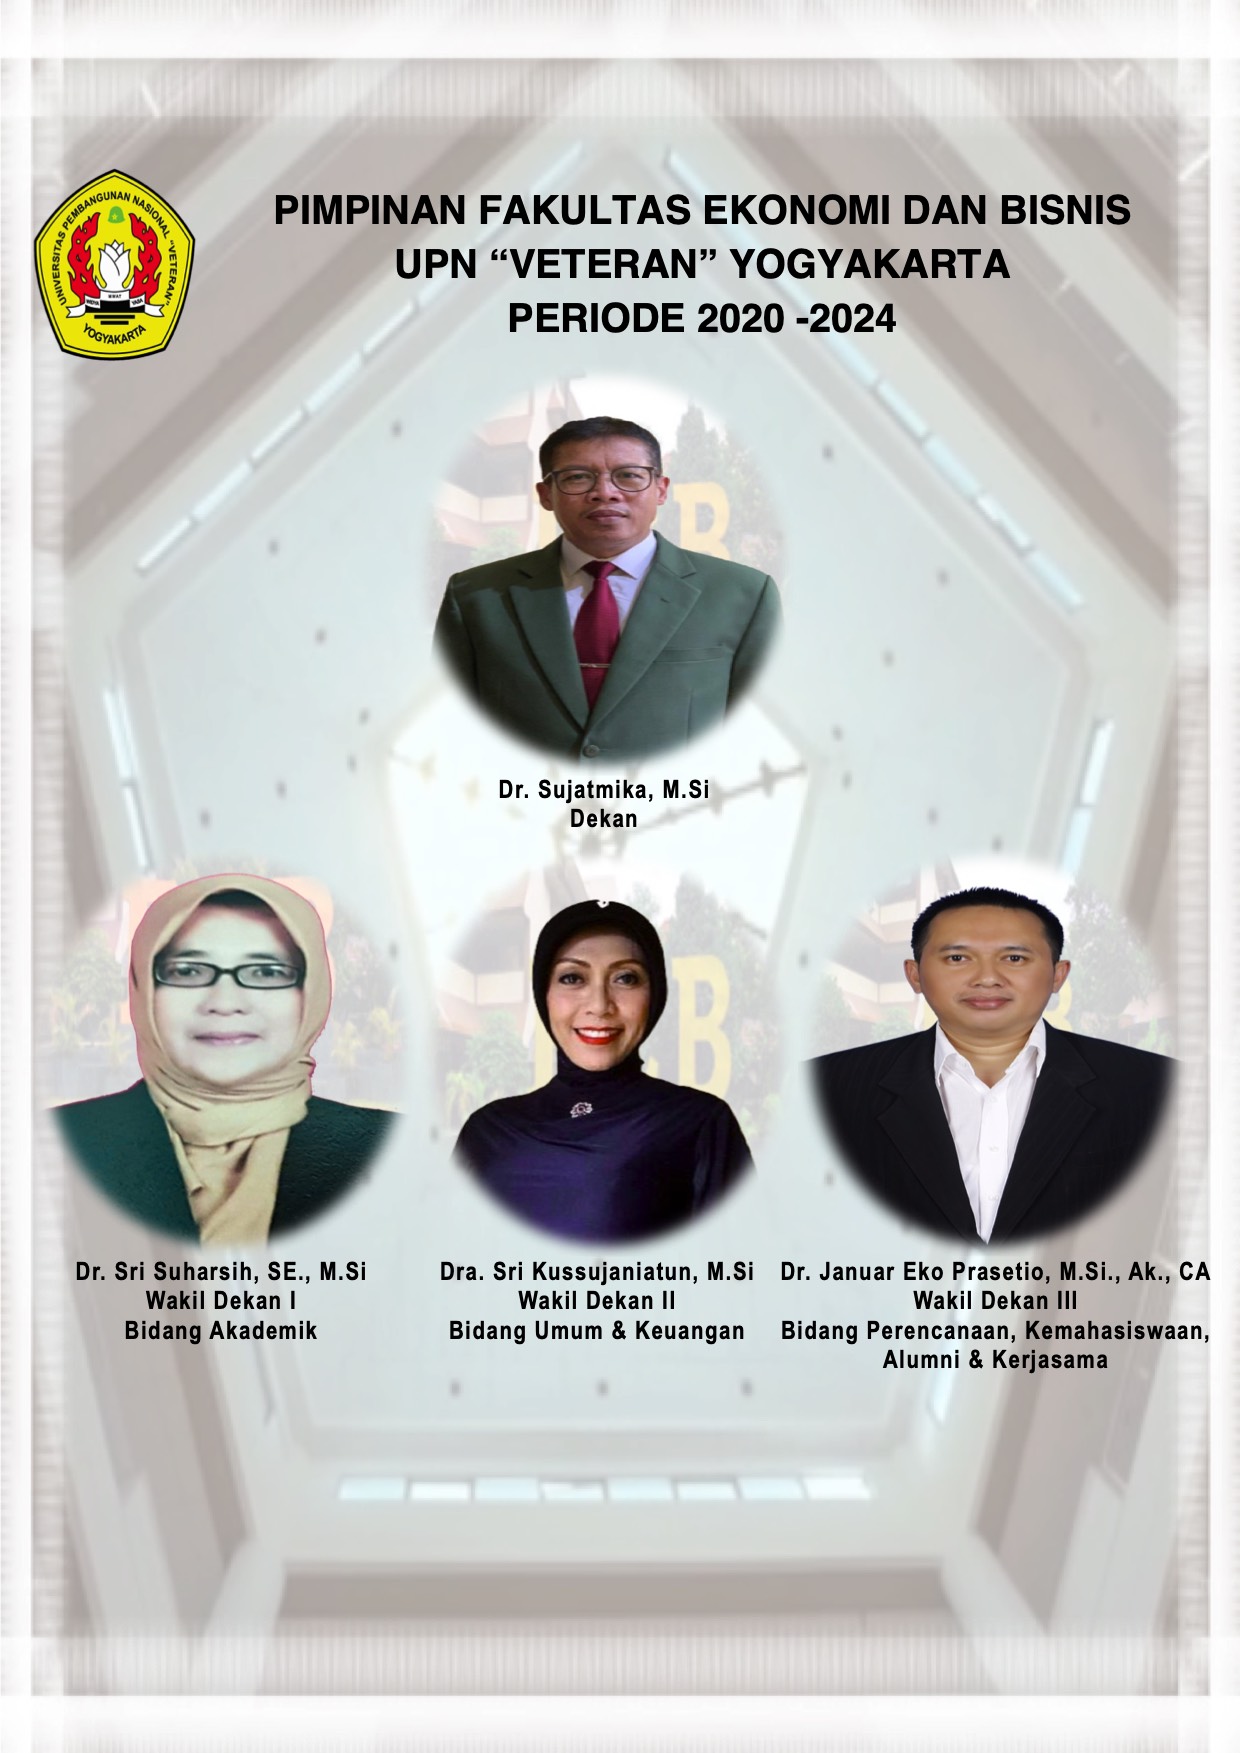 Pimpinan Fakultas Ekonomi dan Bisnis UPN "Veteran" Yogyakarta Periode 2020-2024